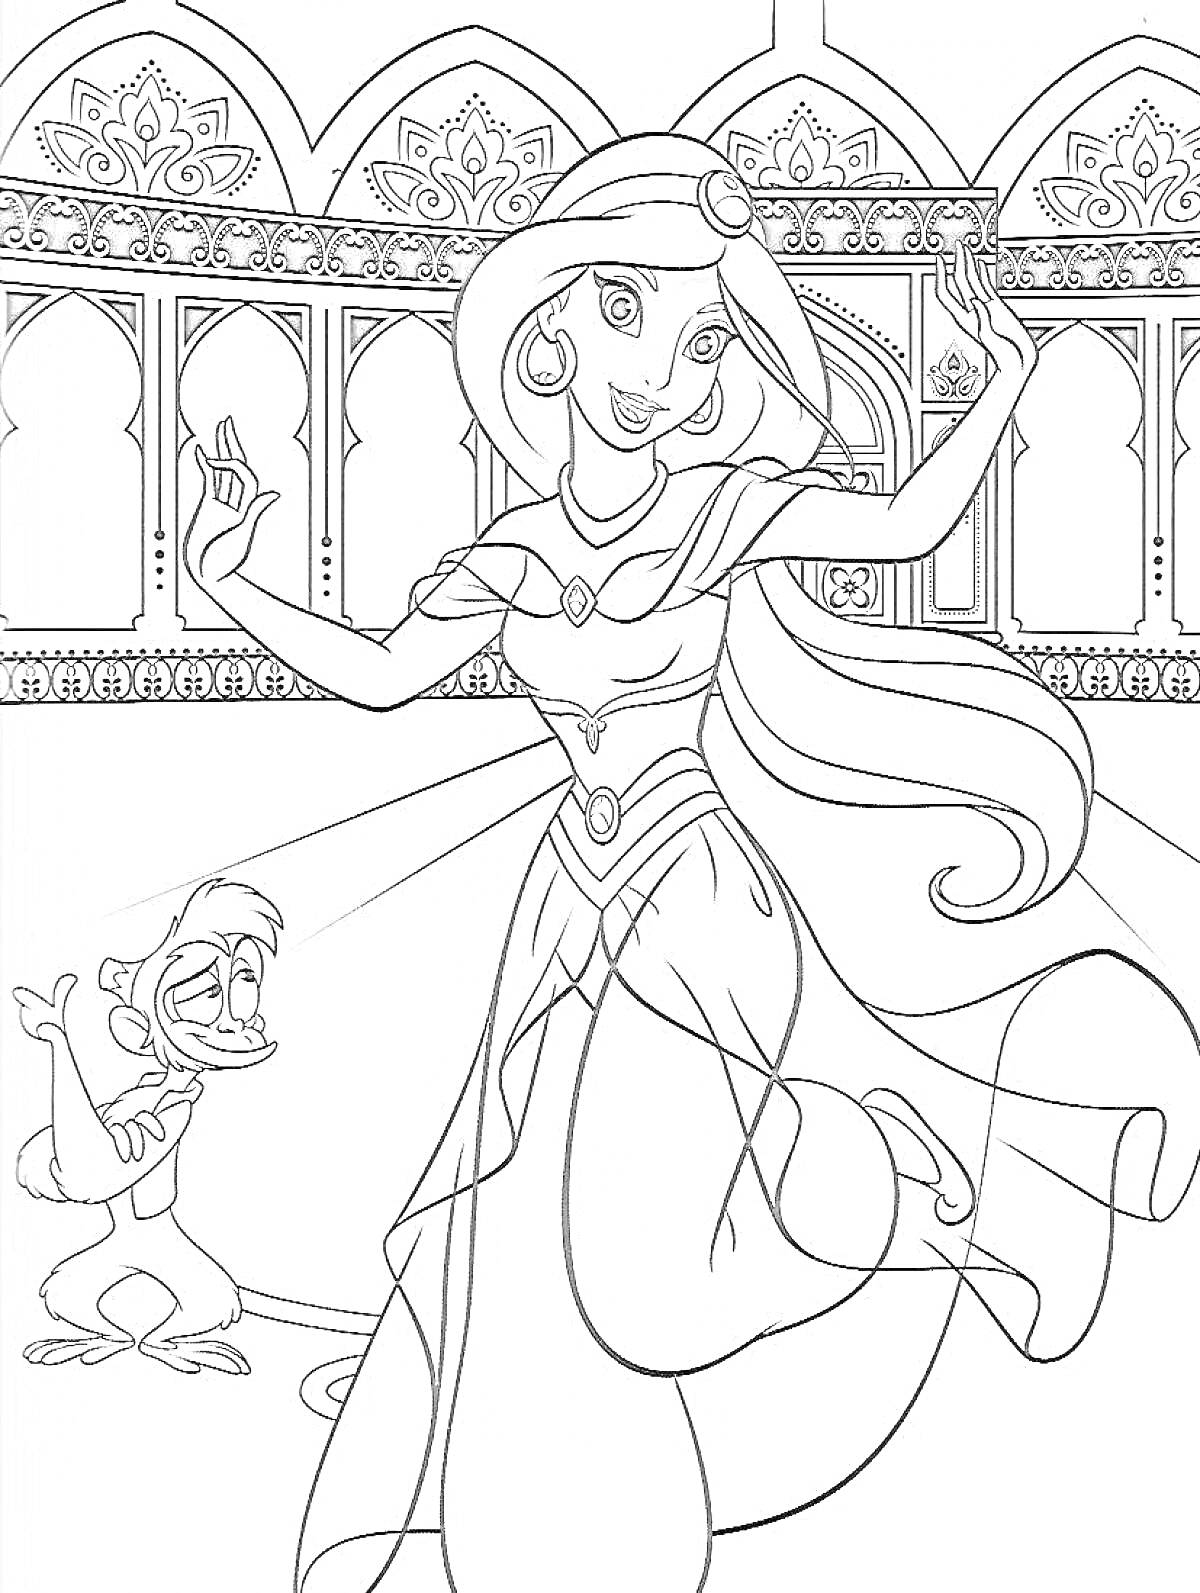 Раскраска Принцесса в восточной одежде с обезьянкой на фоне дворца